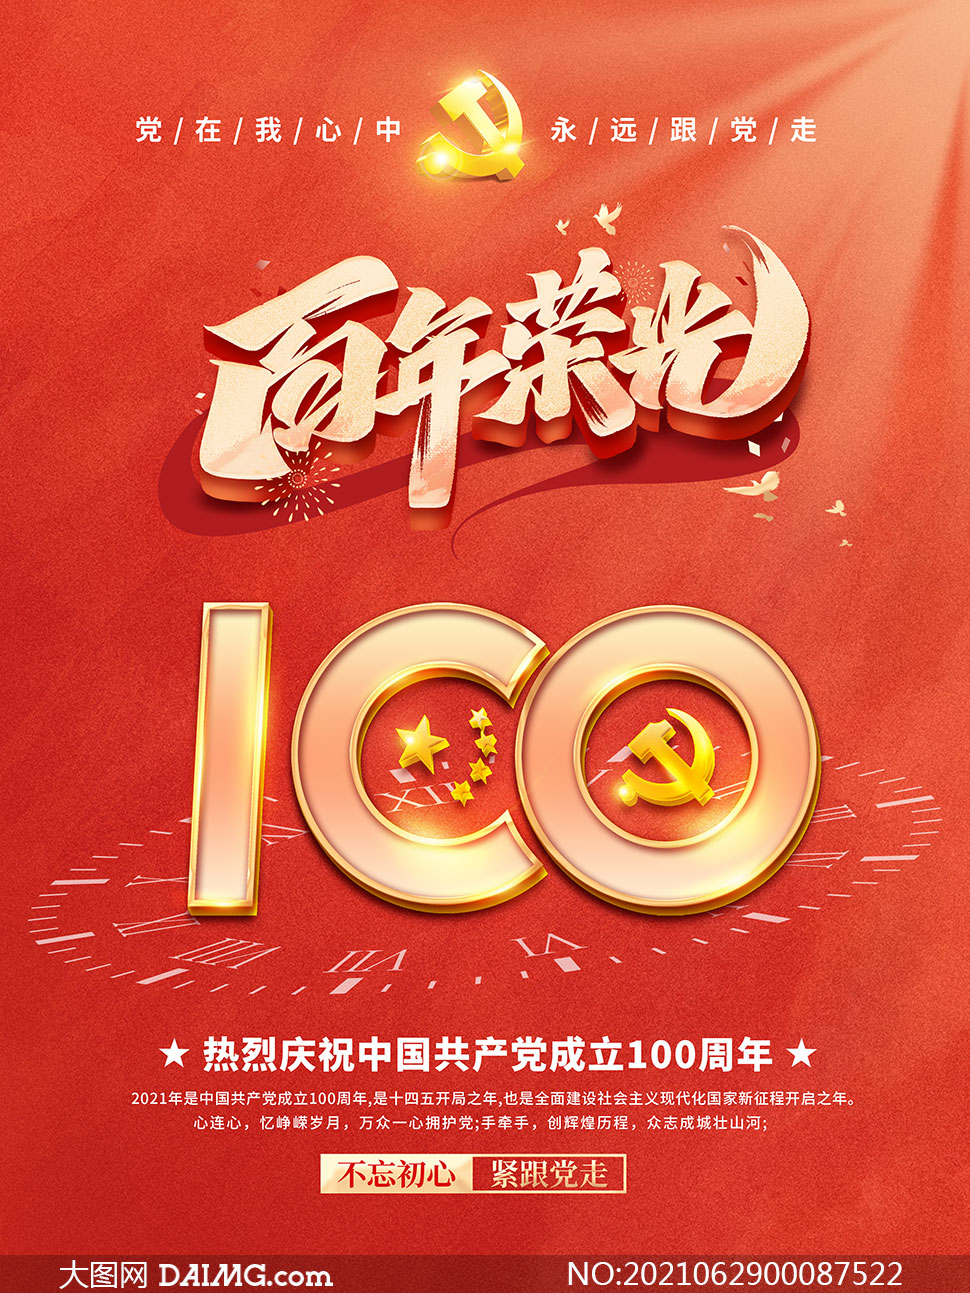 百年荣光建党100周年海报设计psd素材